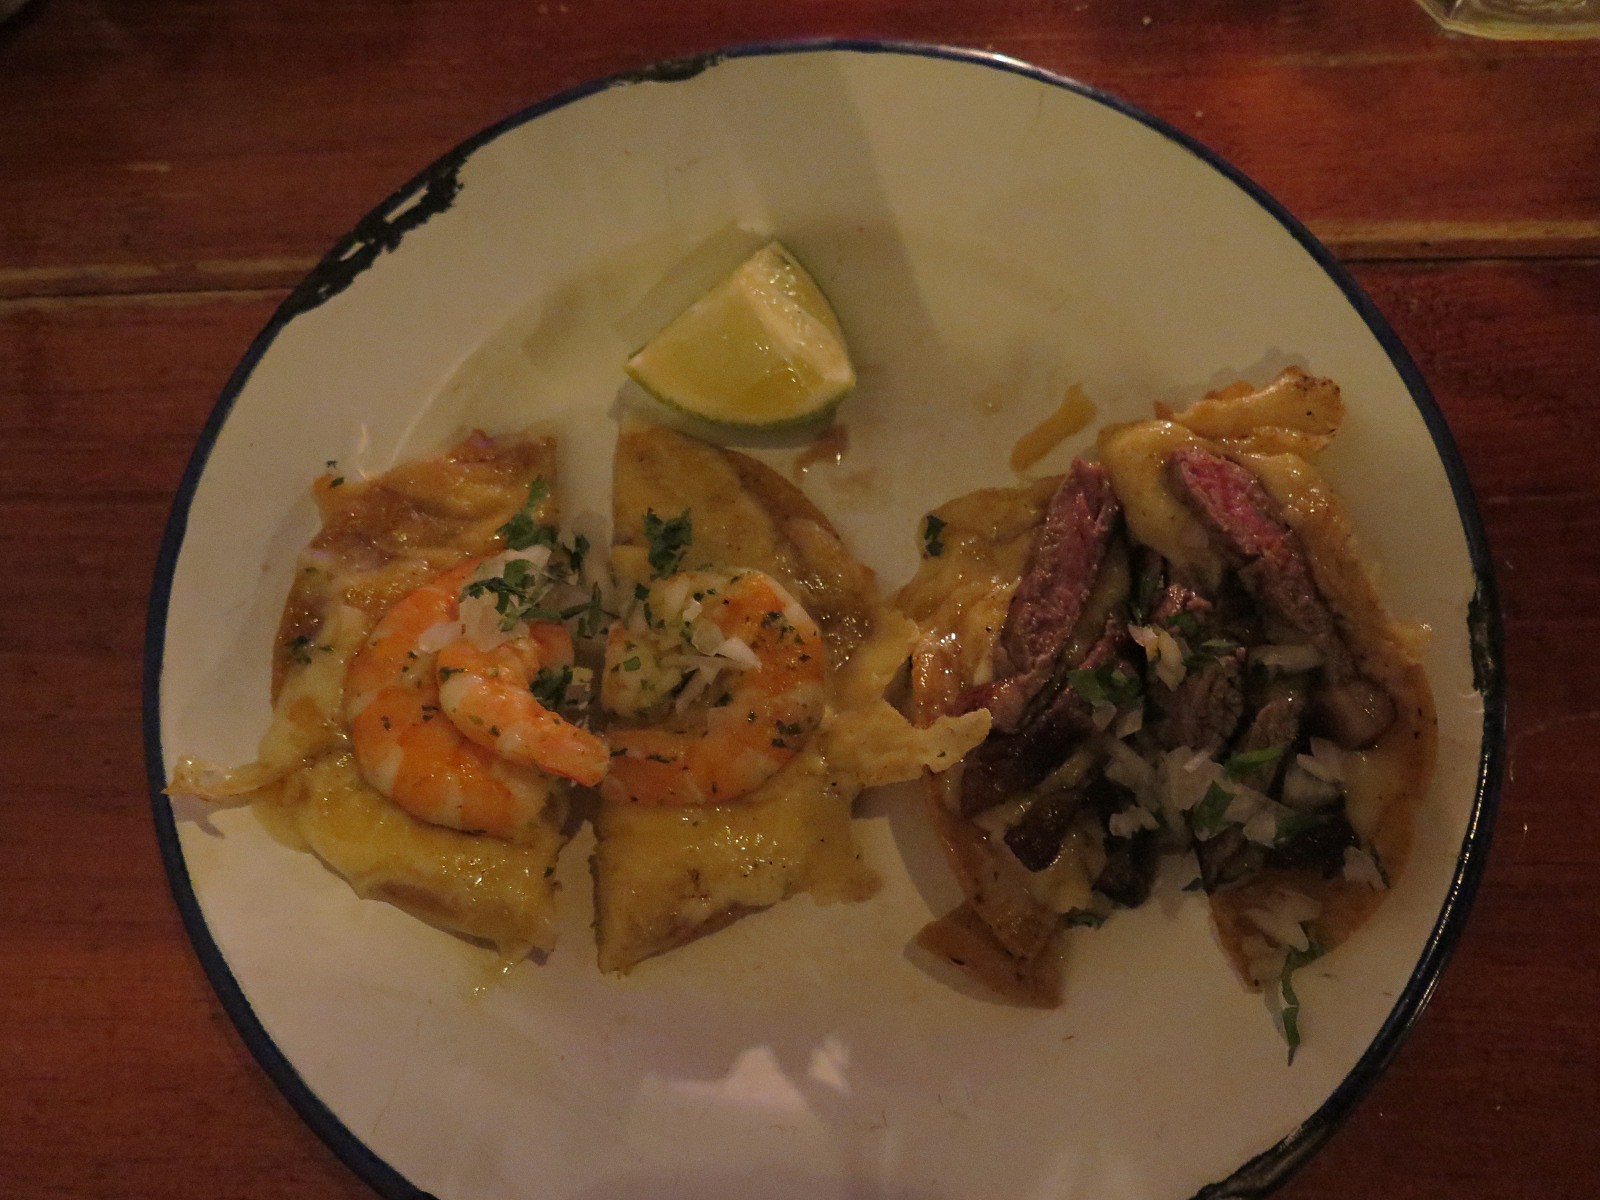 “VOLCANES – a receita especial do nosso Chef; tortillas de milho tostadas com queijo gratinado, uma com camarões, outra com carne assada”